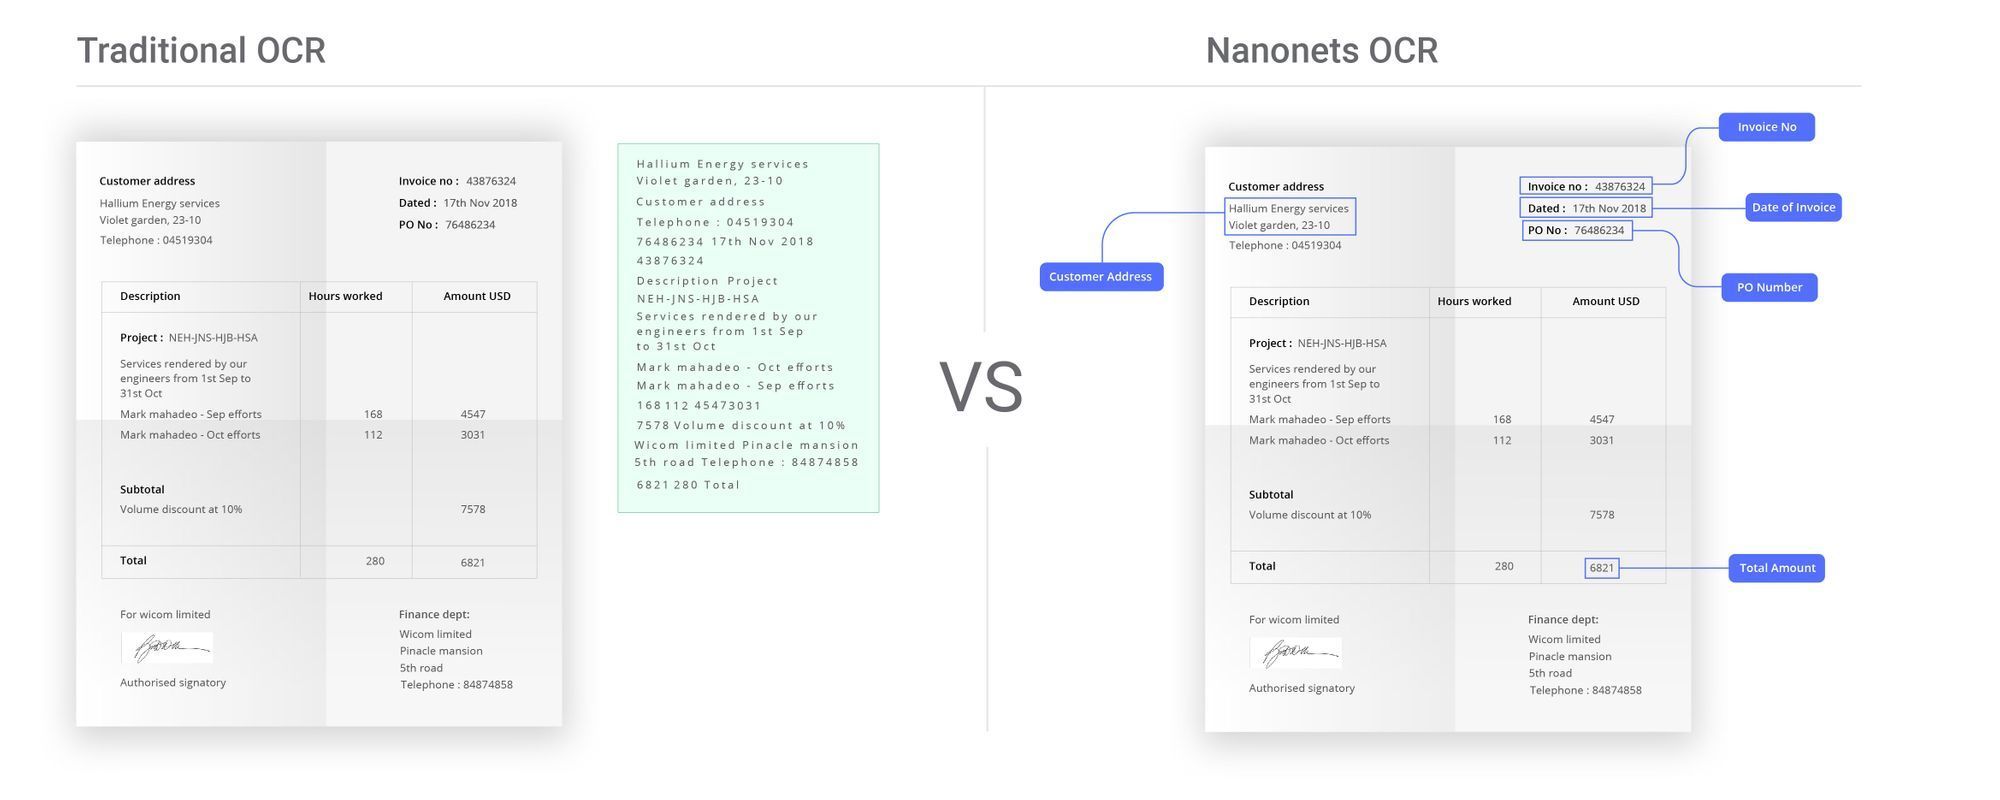 Immagine che illustra i vantaggi di Nanonets OCR per l'automazione dell'immissione degli ordini rispetto agli strumenti OCR tradizionali